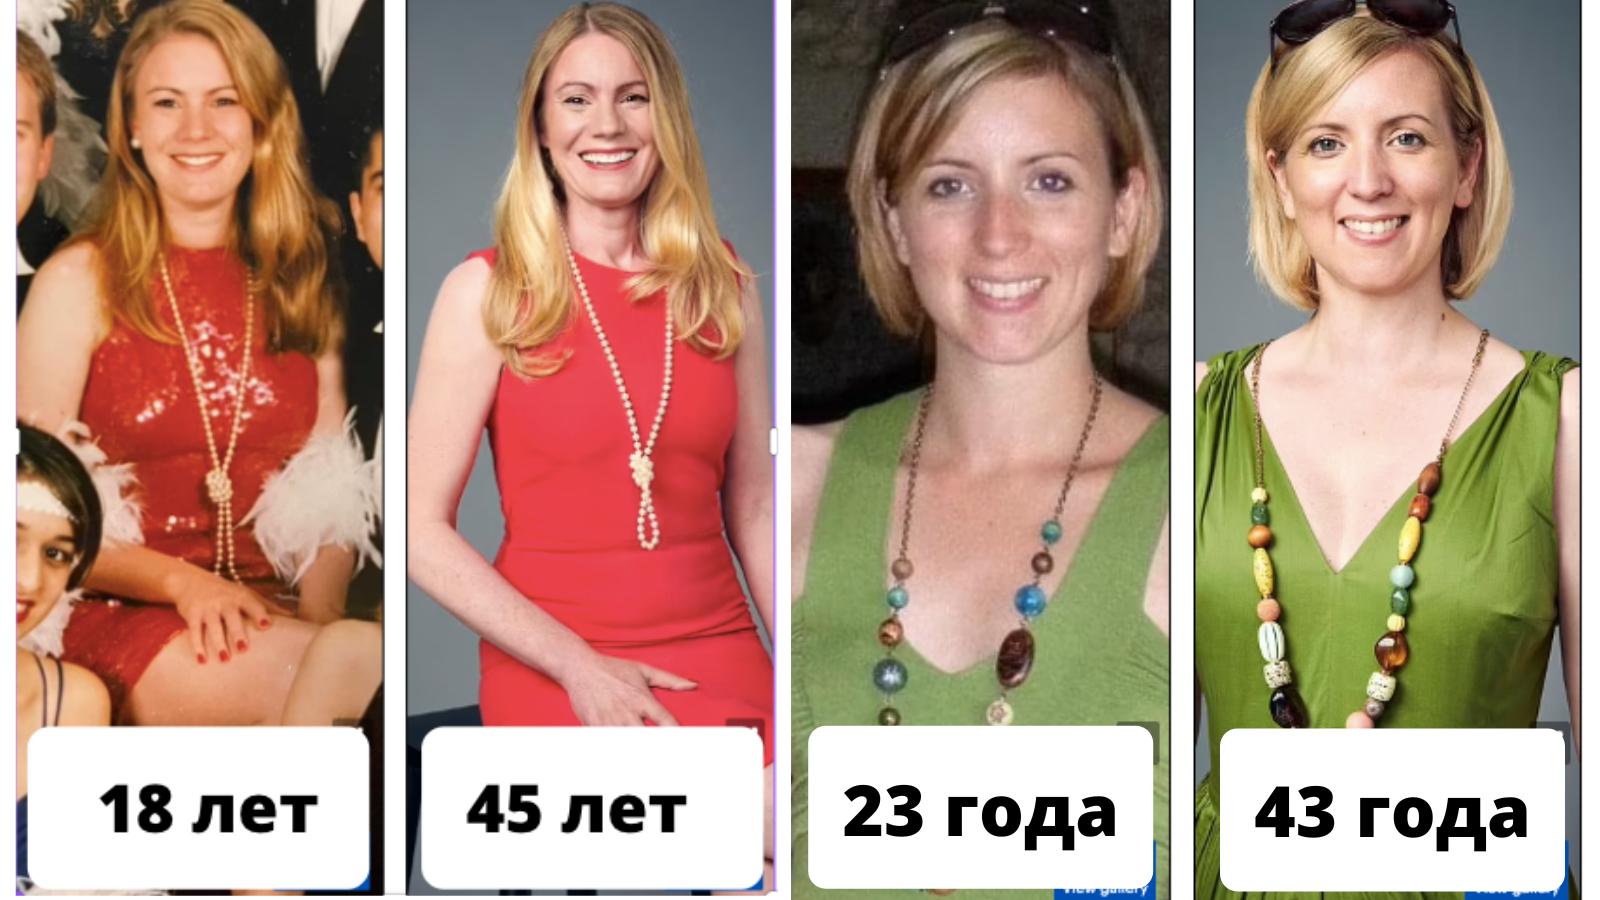 4 женщины, которые не меняют прическу и макияж с возрастом, и выглядят такими же молодыми, как 20 лет назад